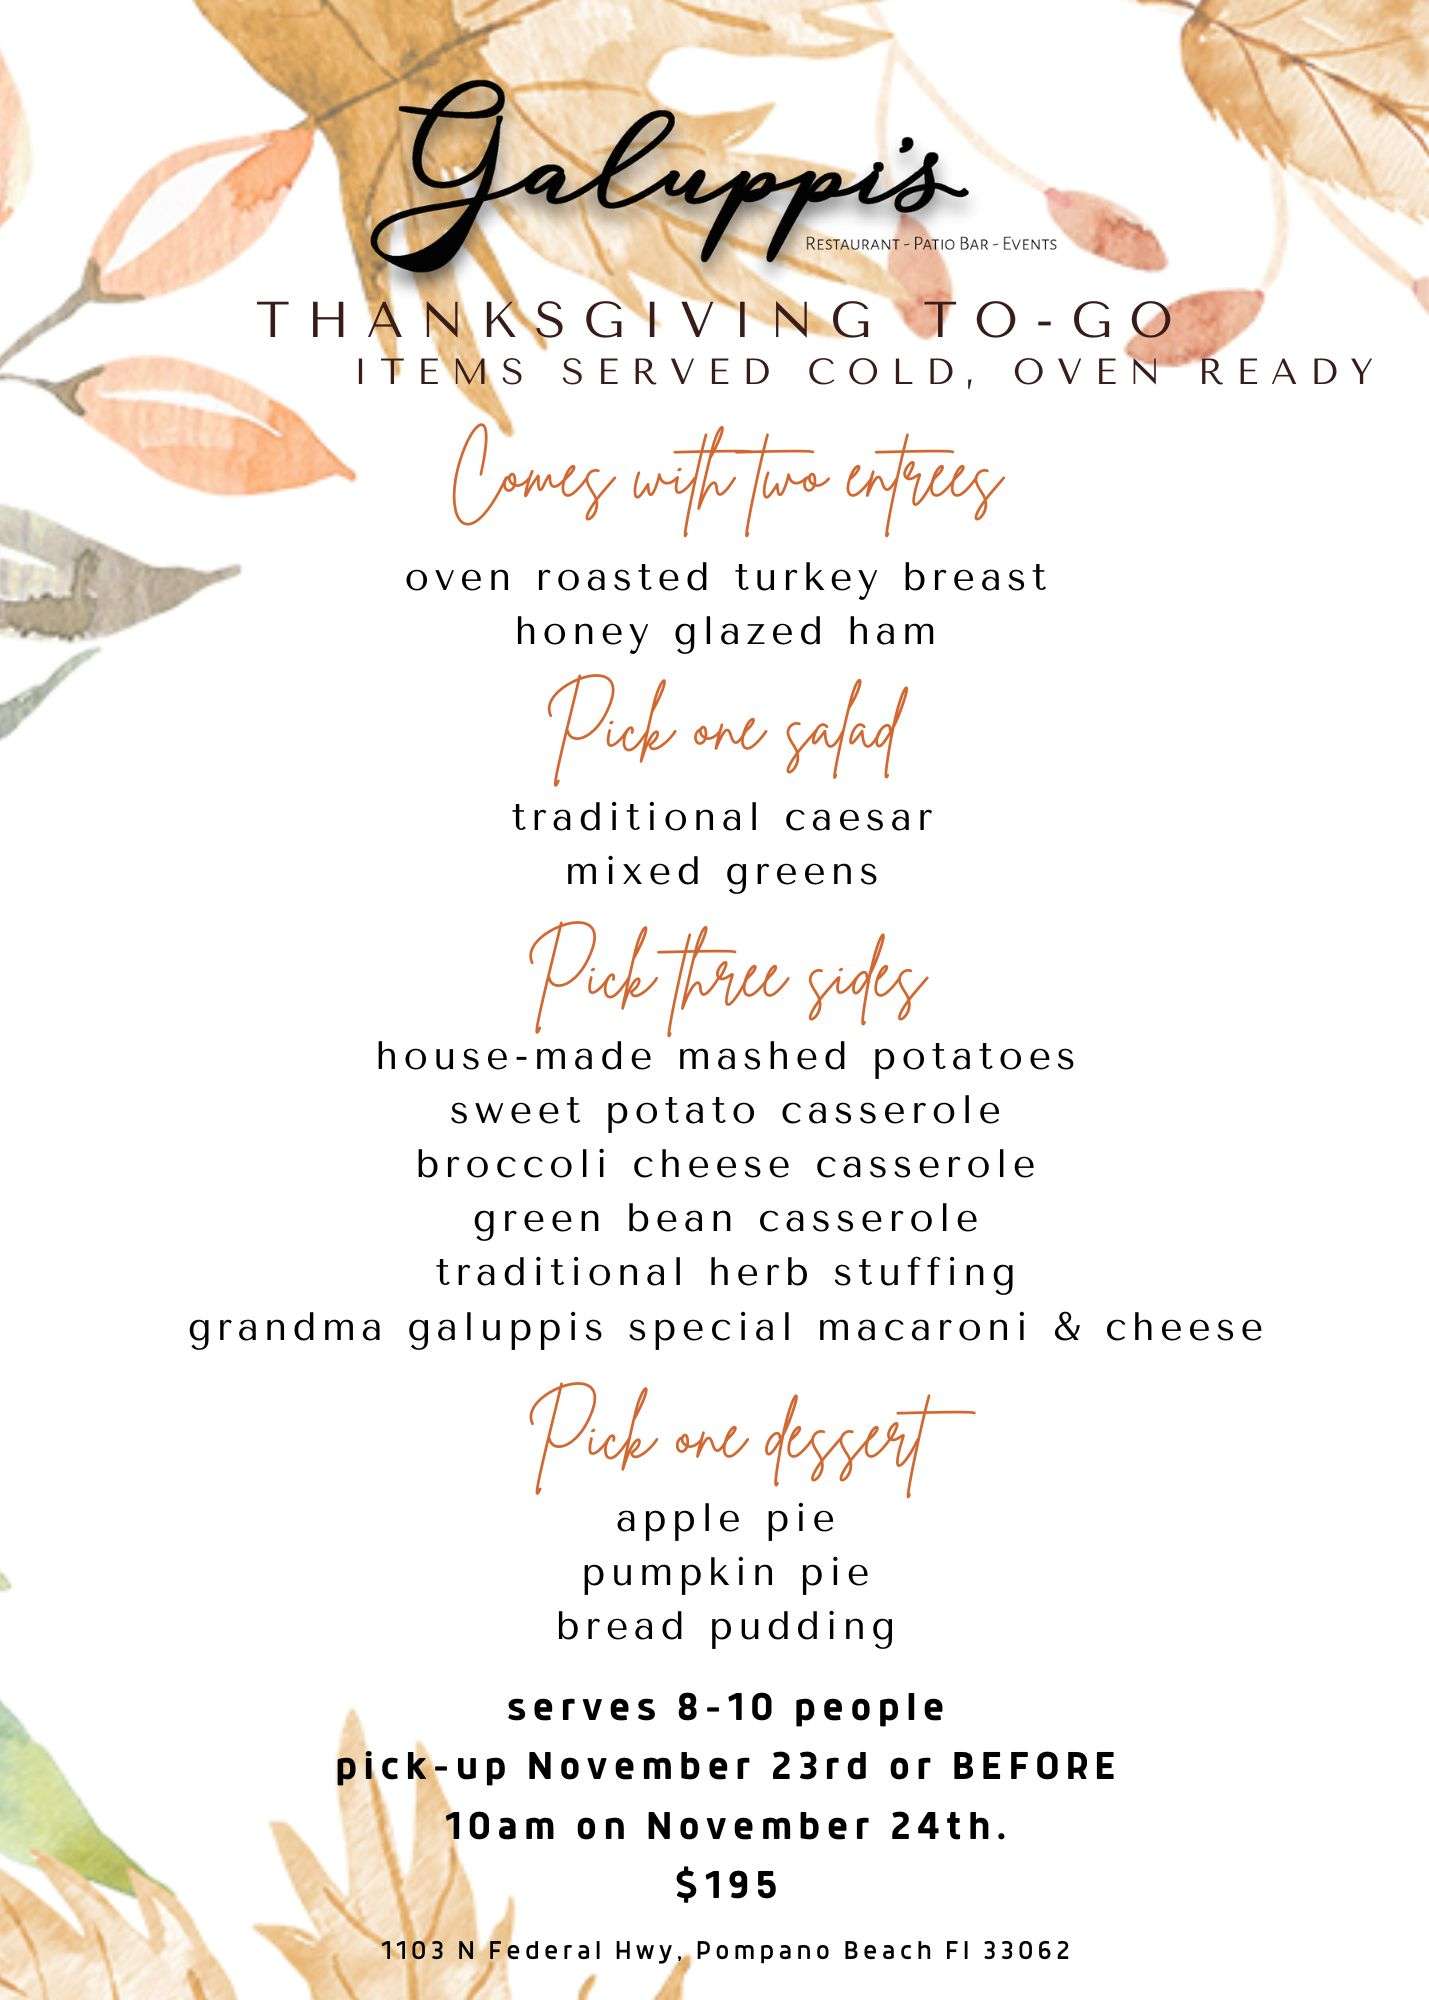 Thanksgiving dinner to-go